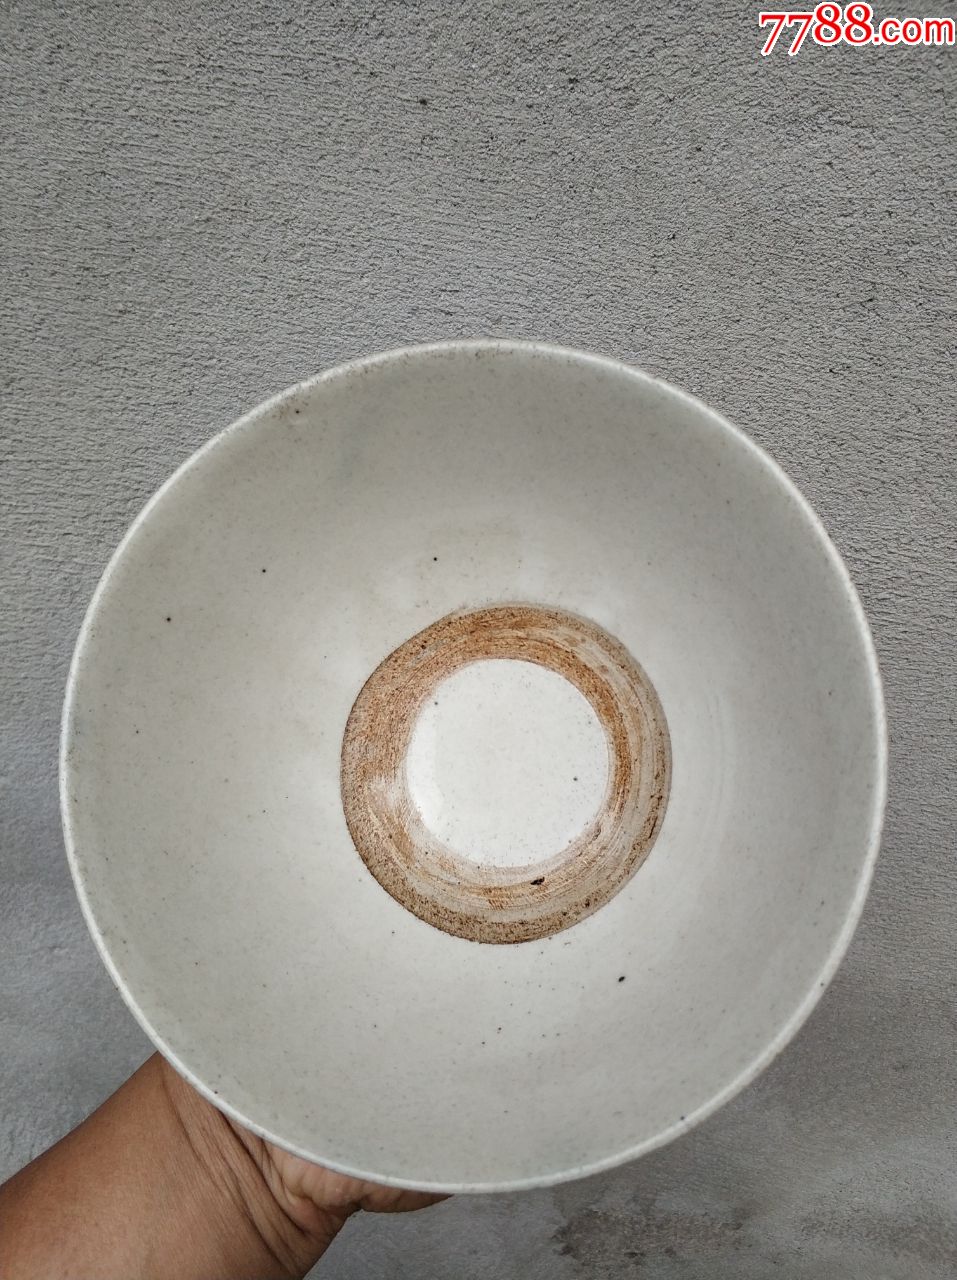 全品六十年代的瓷器碗,口径16.5厘米